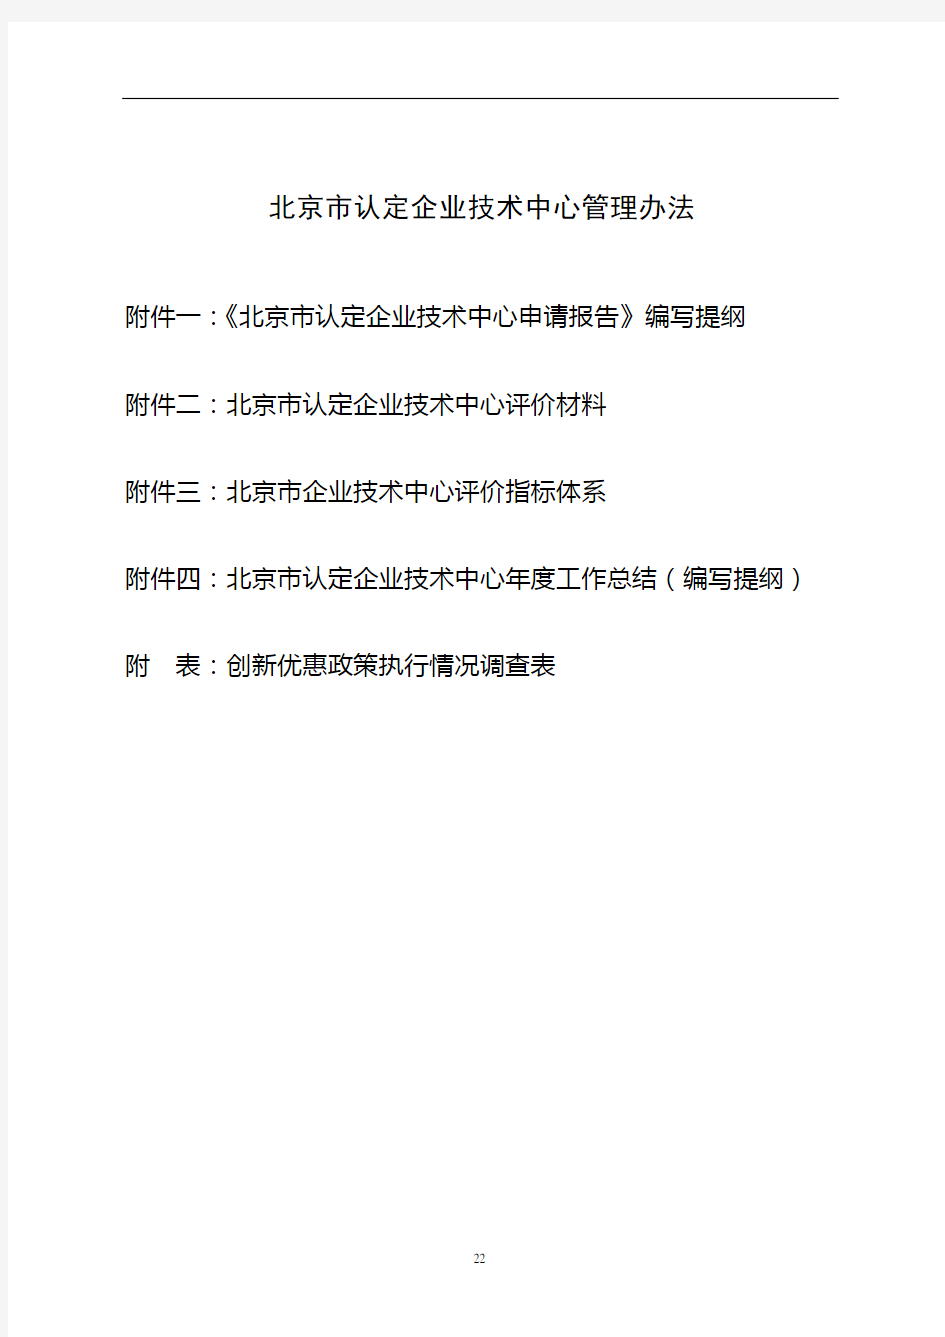 北京市认定企业技术中心管理办法